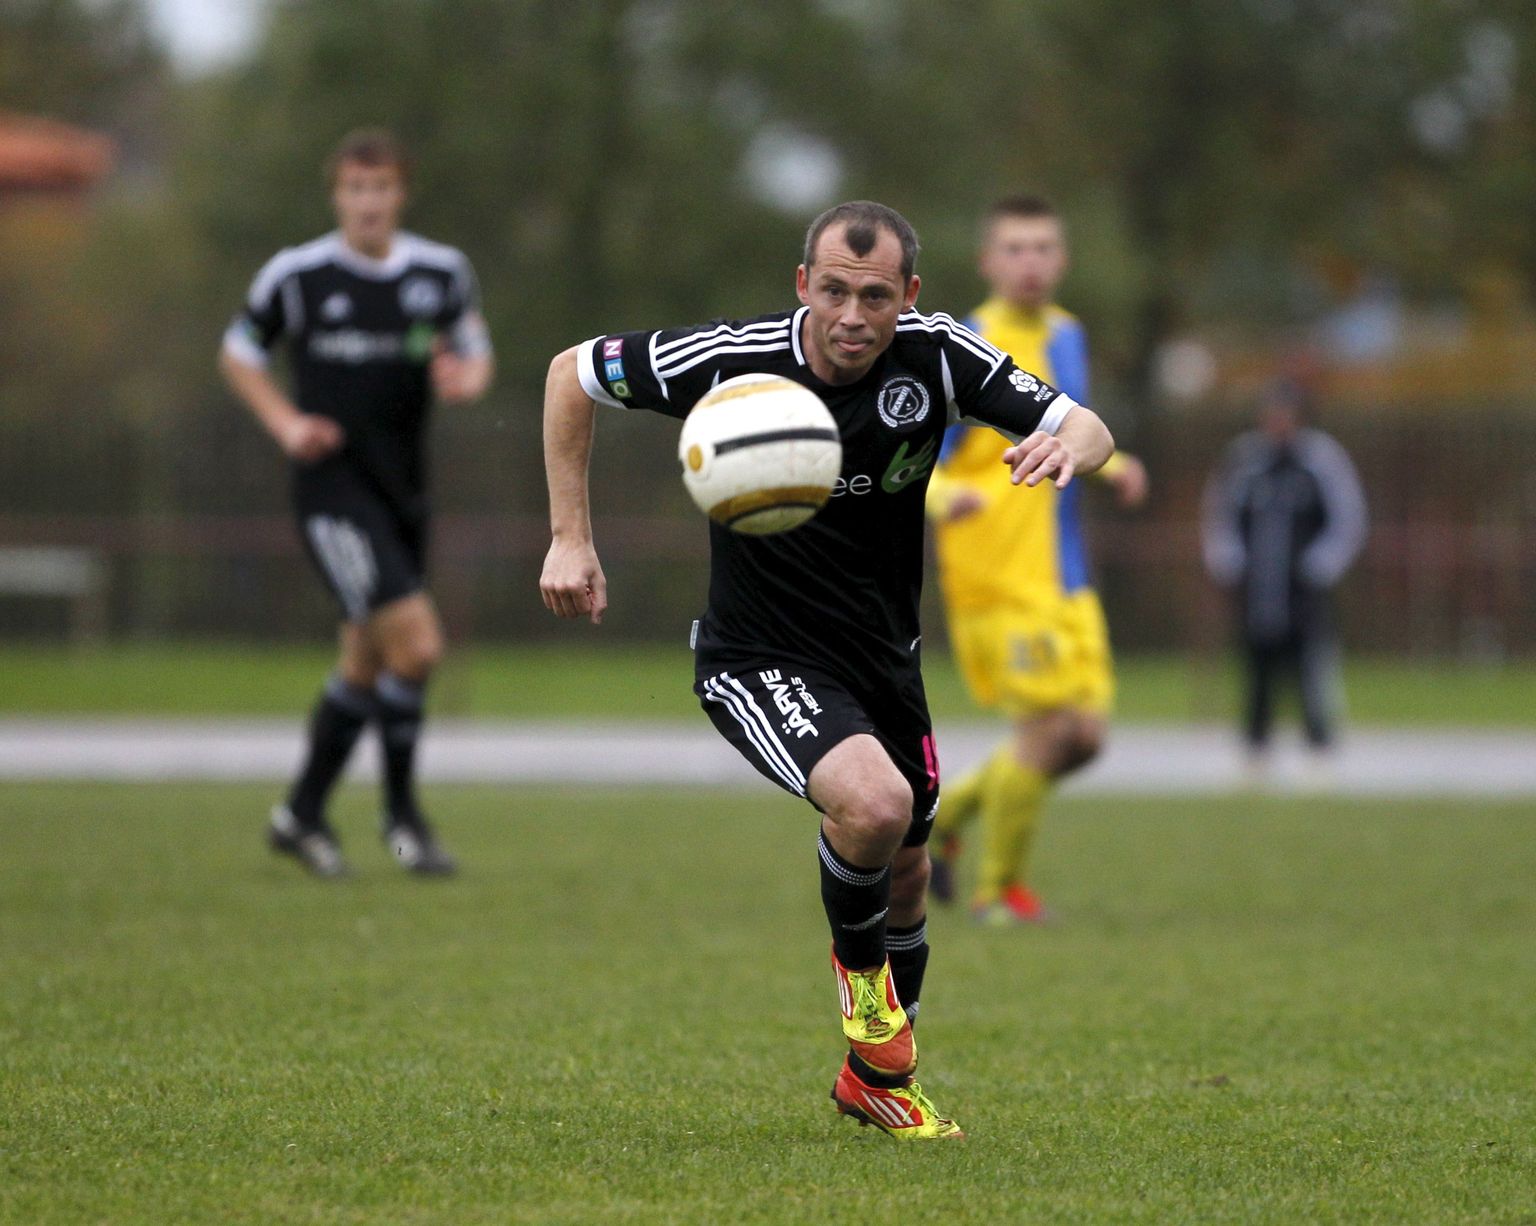 Veel möödunud aastal kuulus Sergei Terehhov Nõmme Kalju mängijate hulka. Alates eilsest on mees aga klubi peatreener.